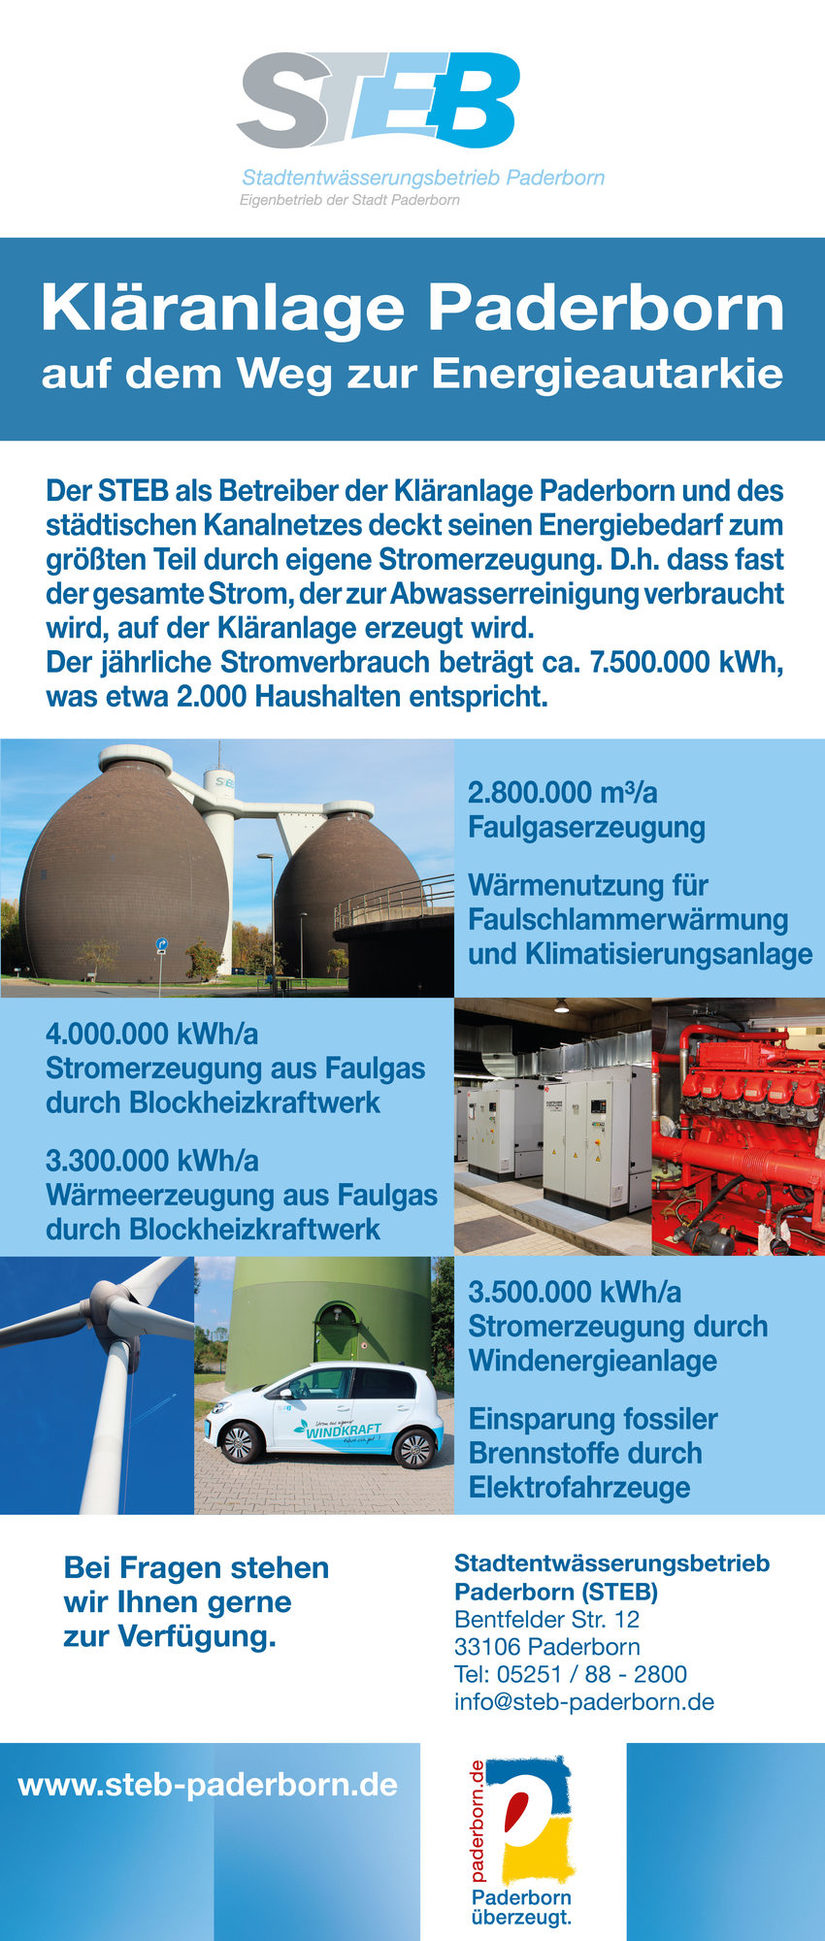 Schaubild "Kläranlage Paderborn - Auf dem Weg zur Energieautarkie"